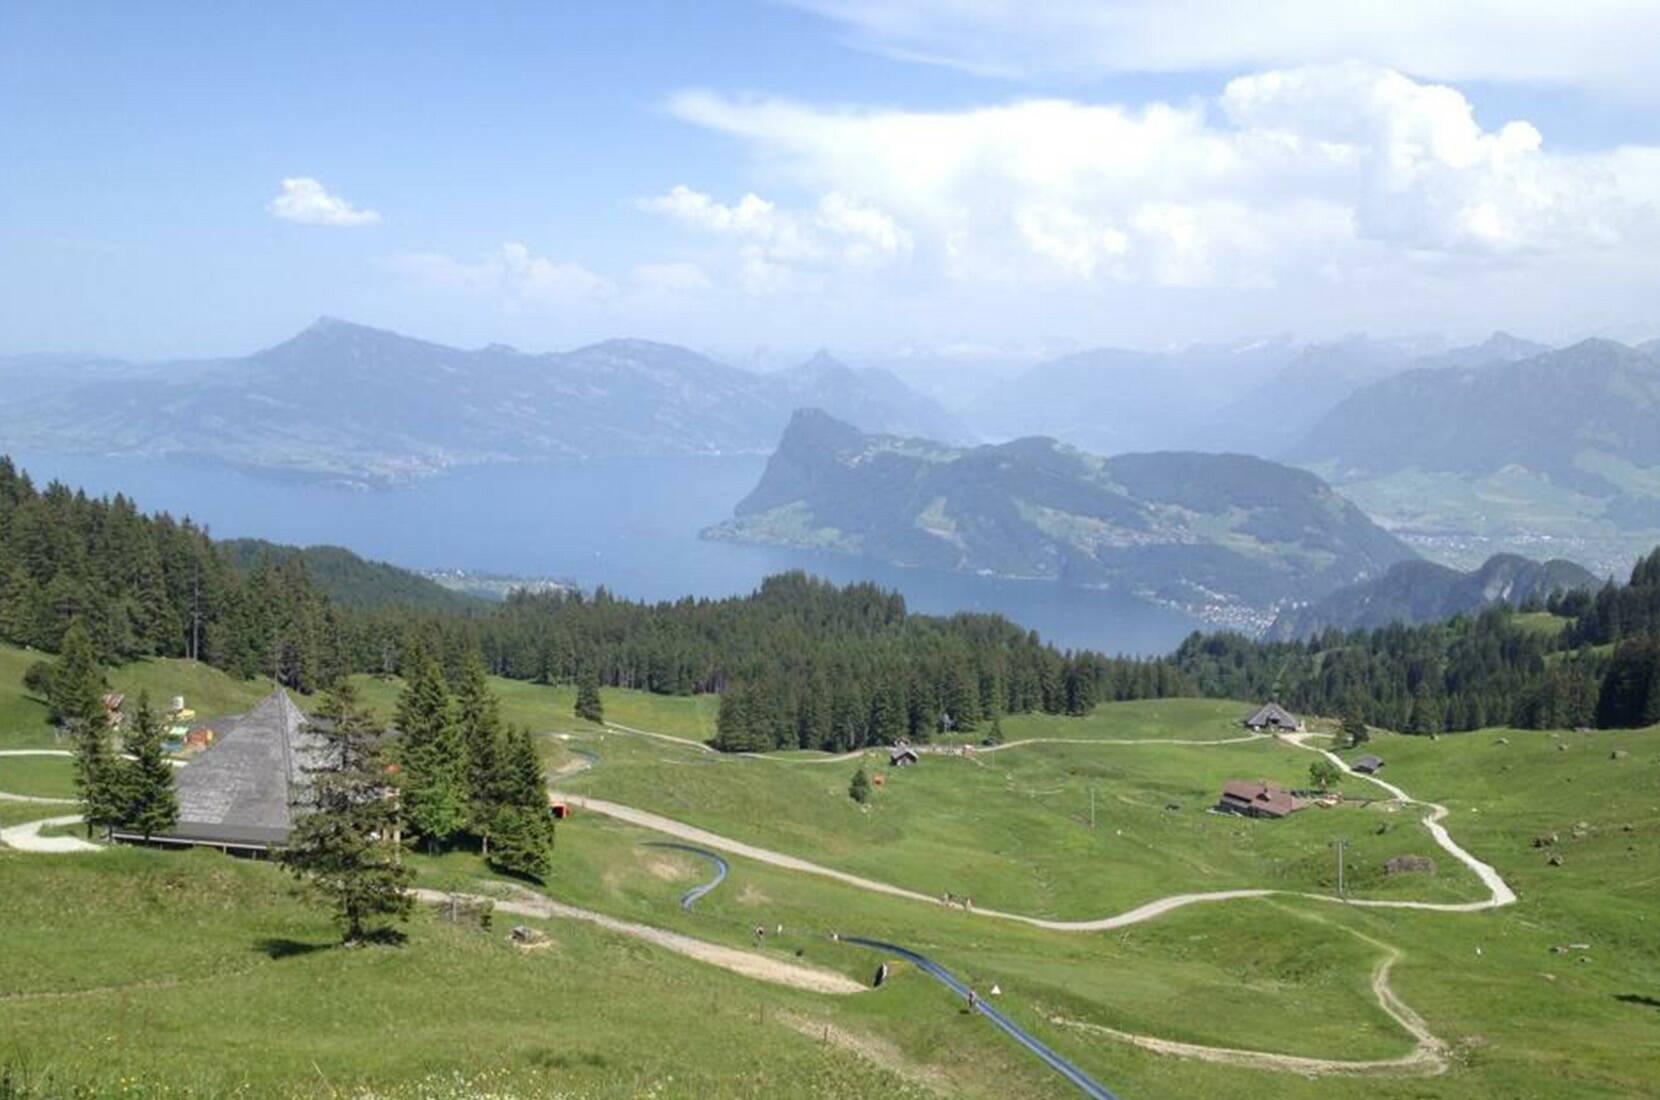 Die spektakuläre Fahrt auf der längsten Sommer-Rodelbahn der Schweiz beginnt in unmittelbarer Nähe der Bergstation Fräkmüntegg. Zahlreiche Steilkurven und «Drachenlöcher»-Tunnels im 1350 Meter langen Chromstahlkanal versprechen actionreiches Tempo und adrenalingeladenen Spass.